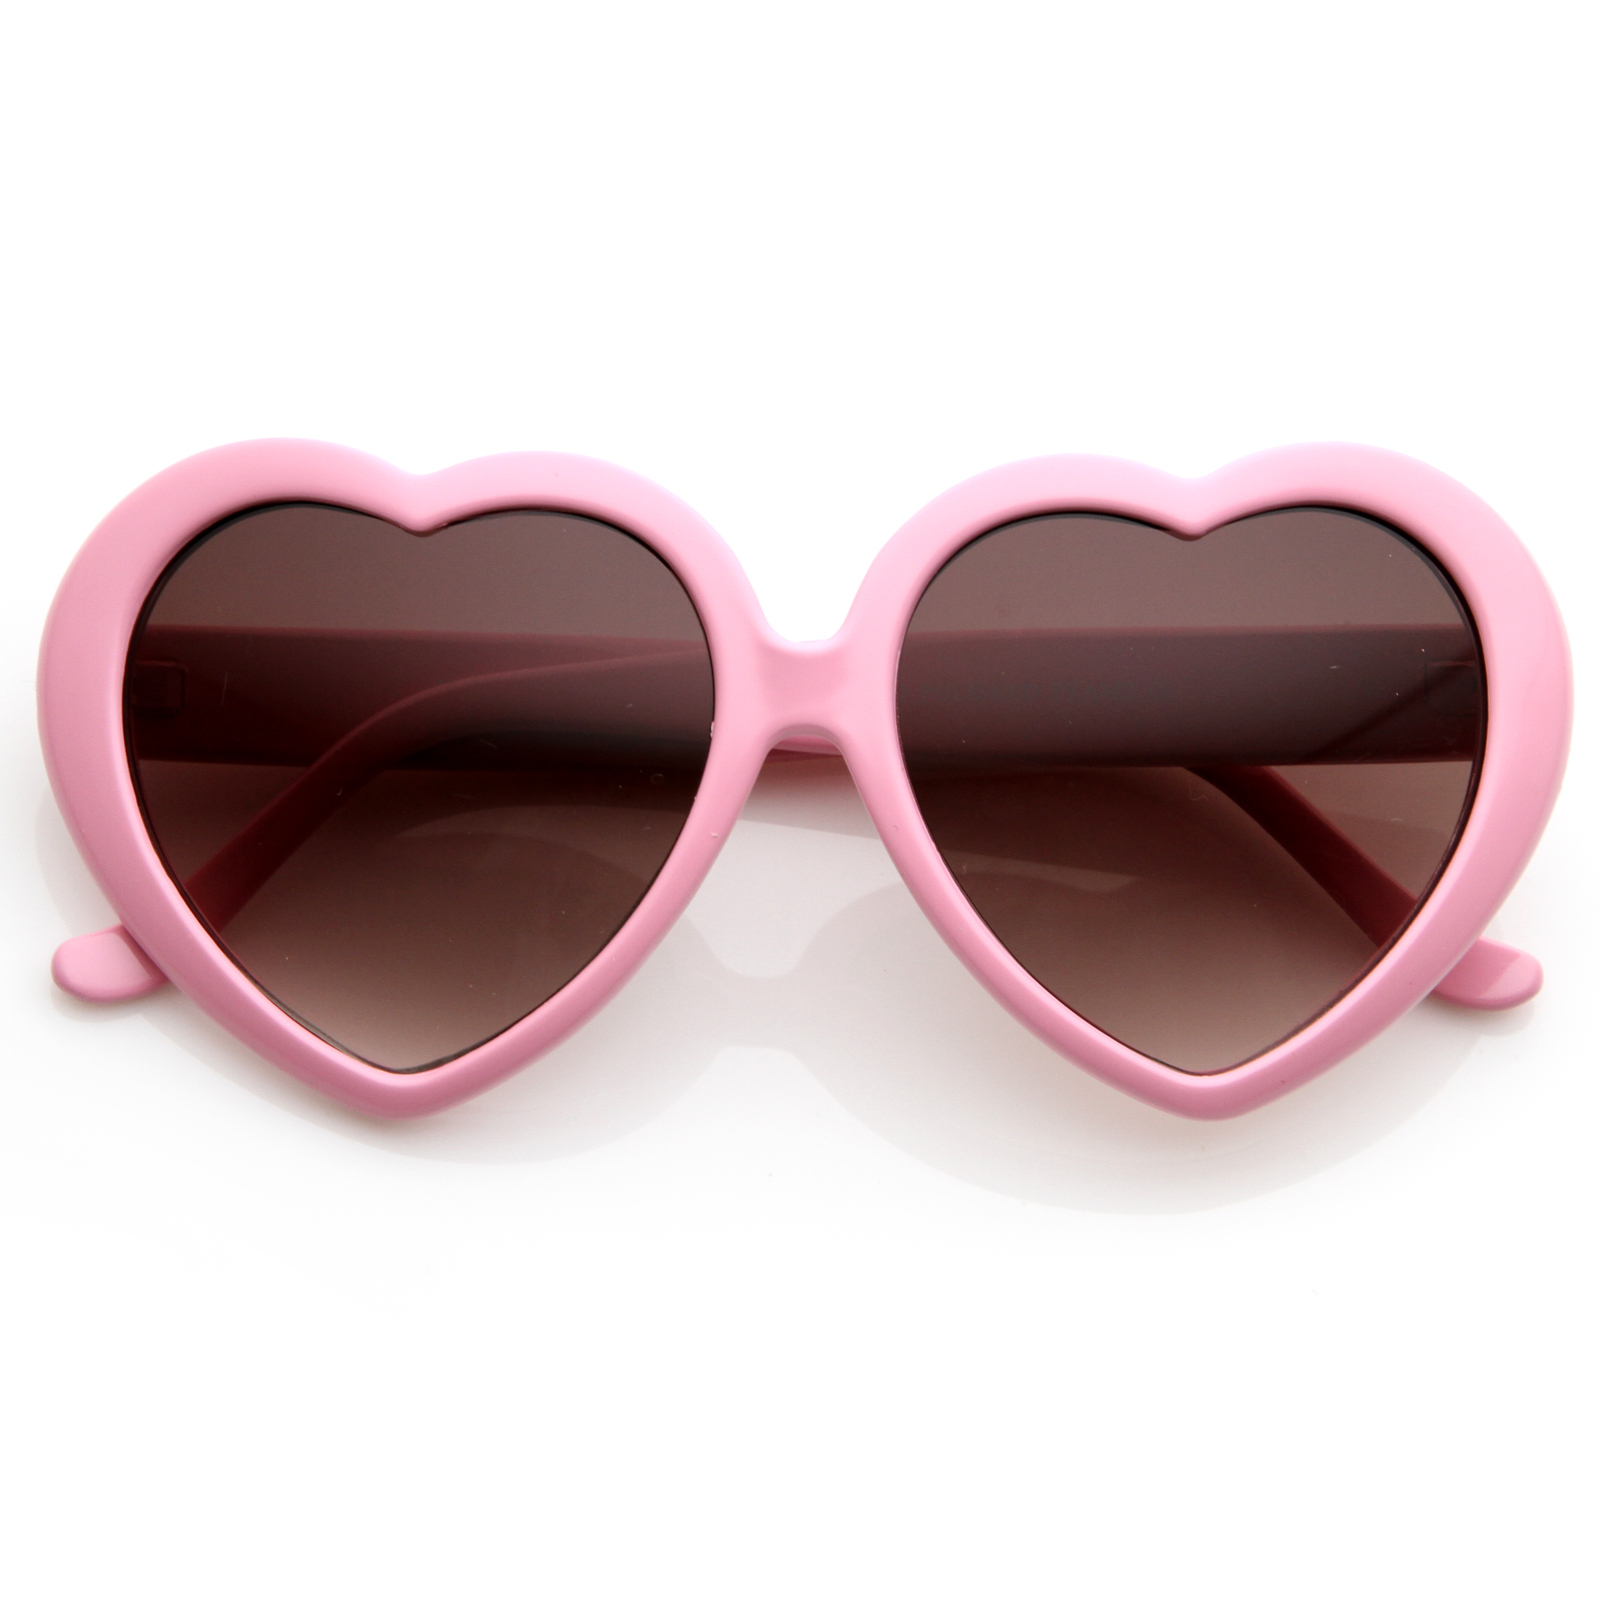 Large Oversized Womens Heart Shaped Sunglasses Cute Love Fashion Eyewear - 8182 - Light Pink